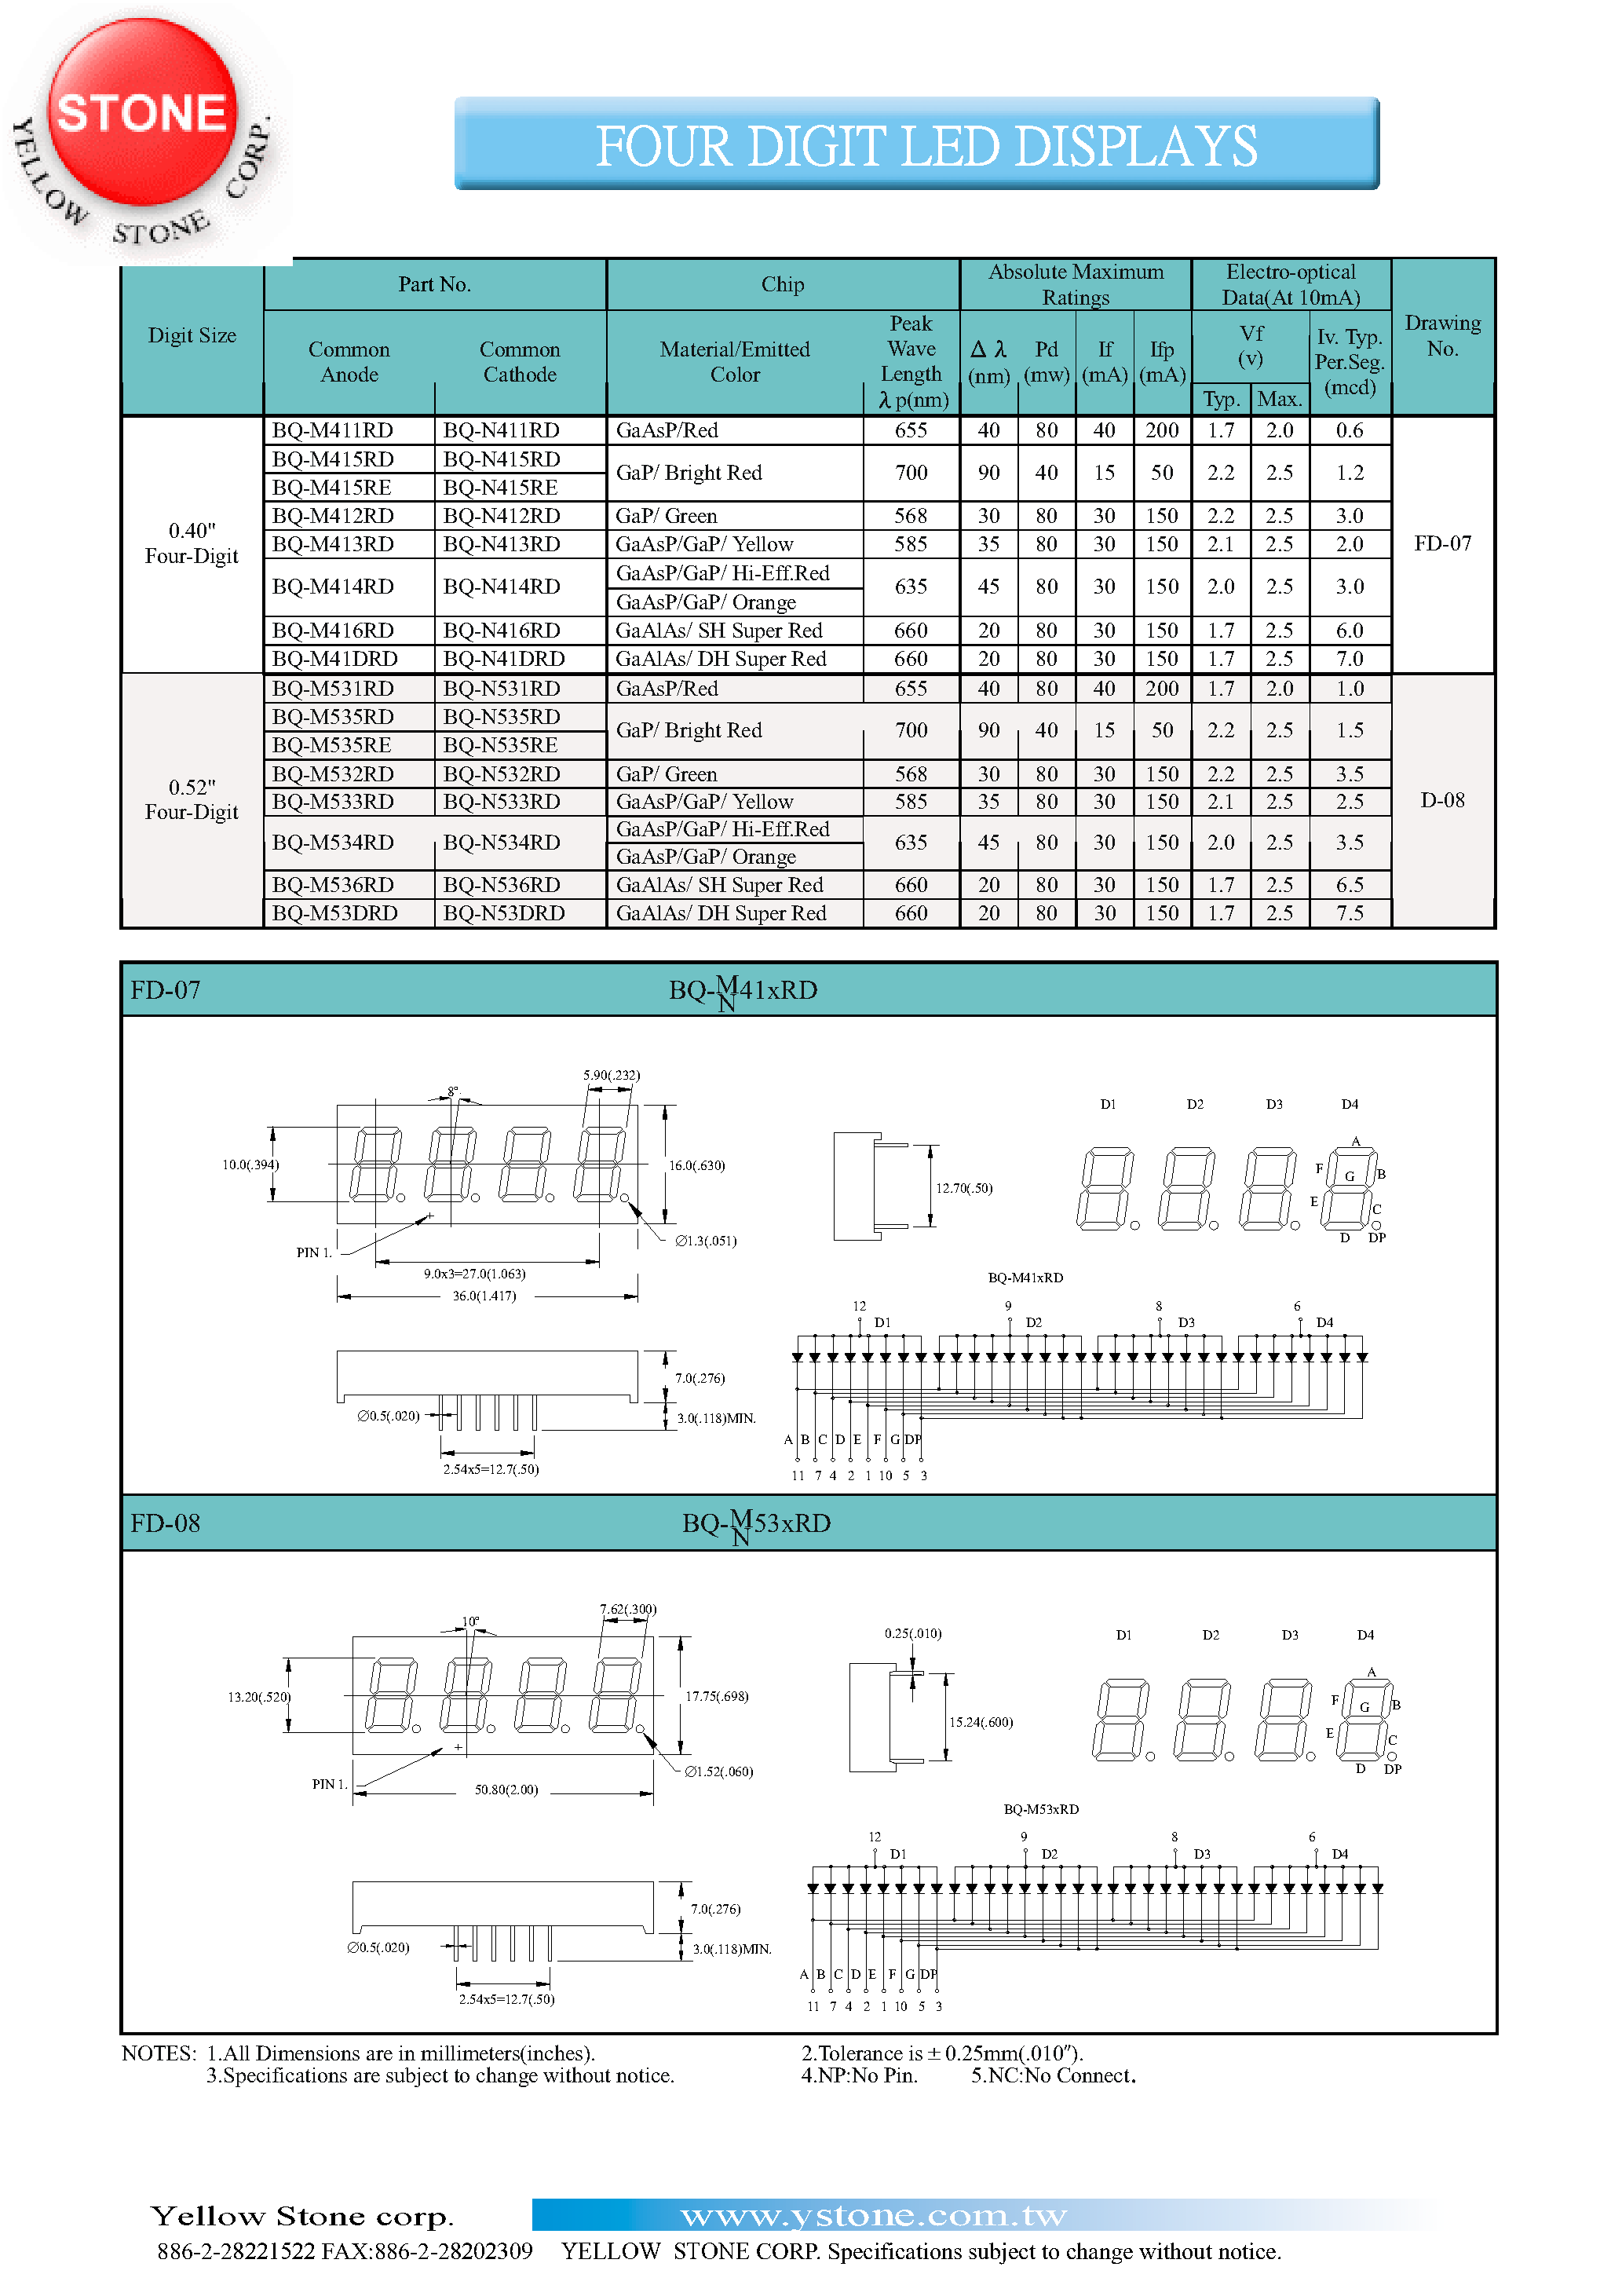 Datasheet BQ-M415RD - FOUR DIGIT LED DISPLAYS page 1